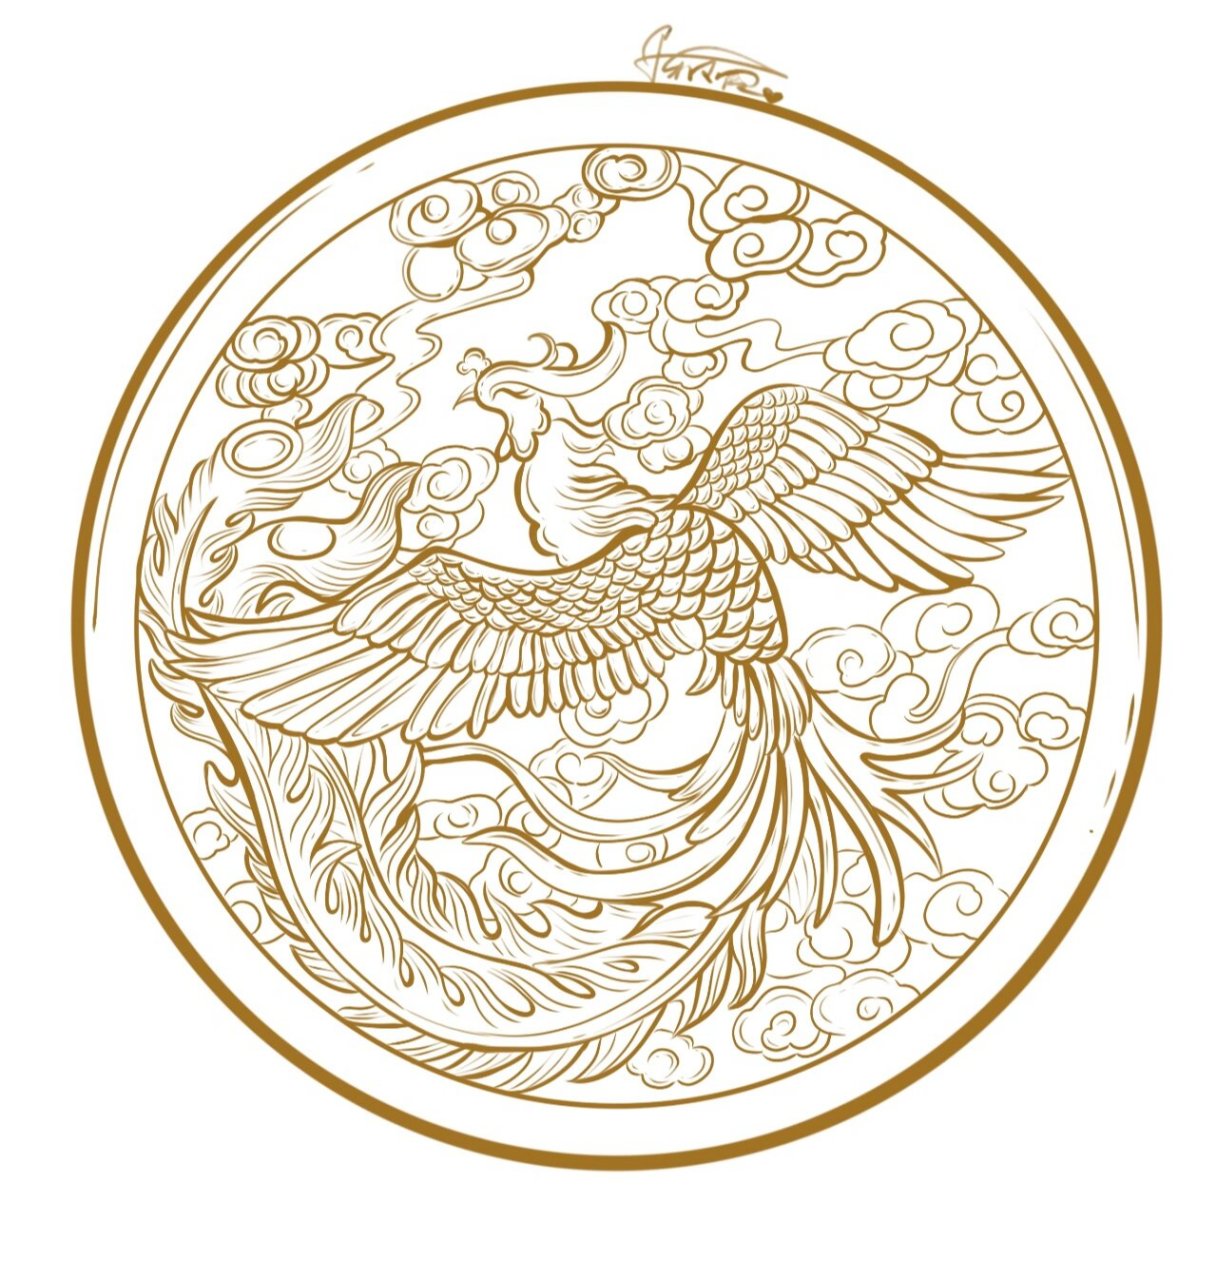 凤鸟纹样设计图片